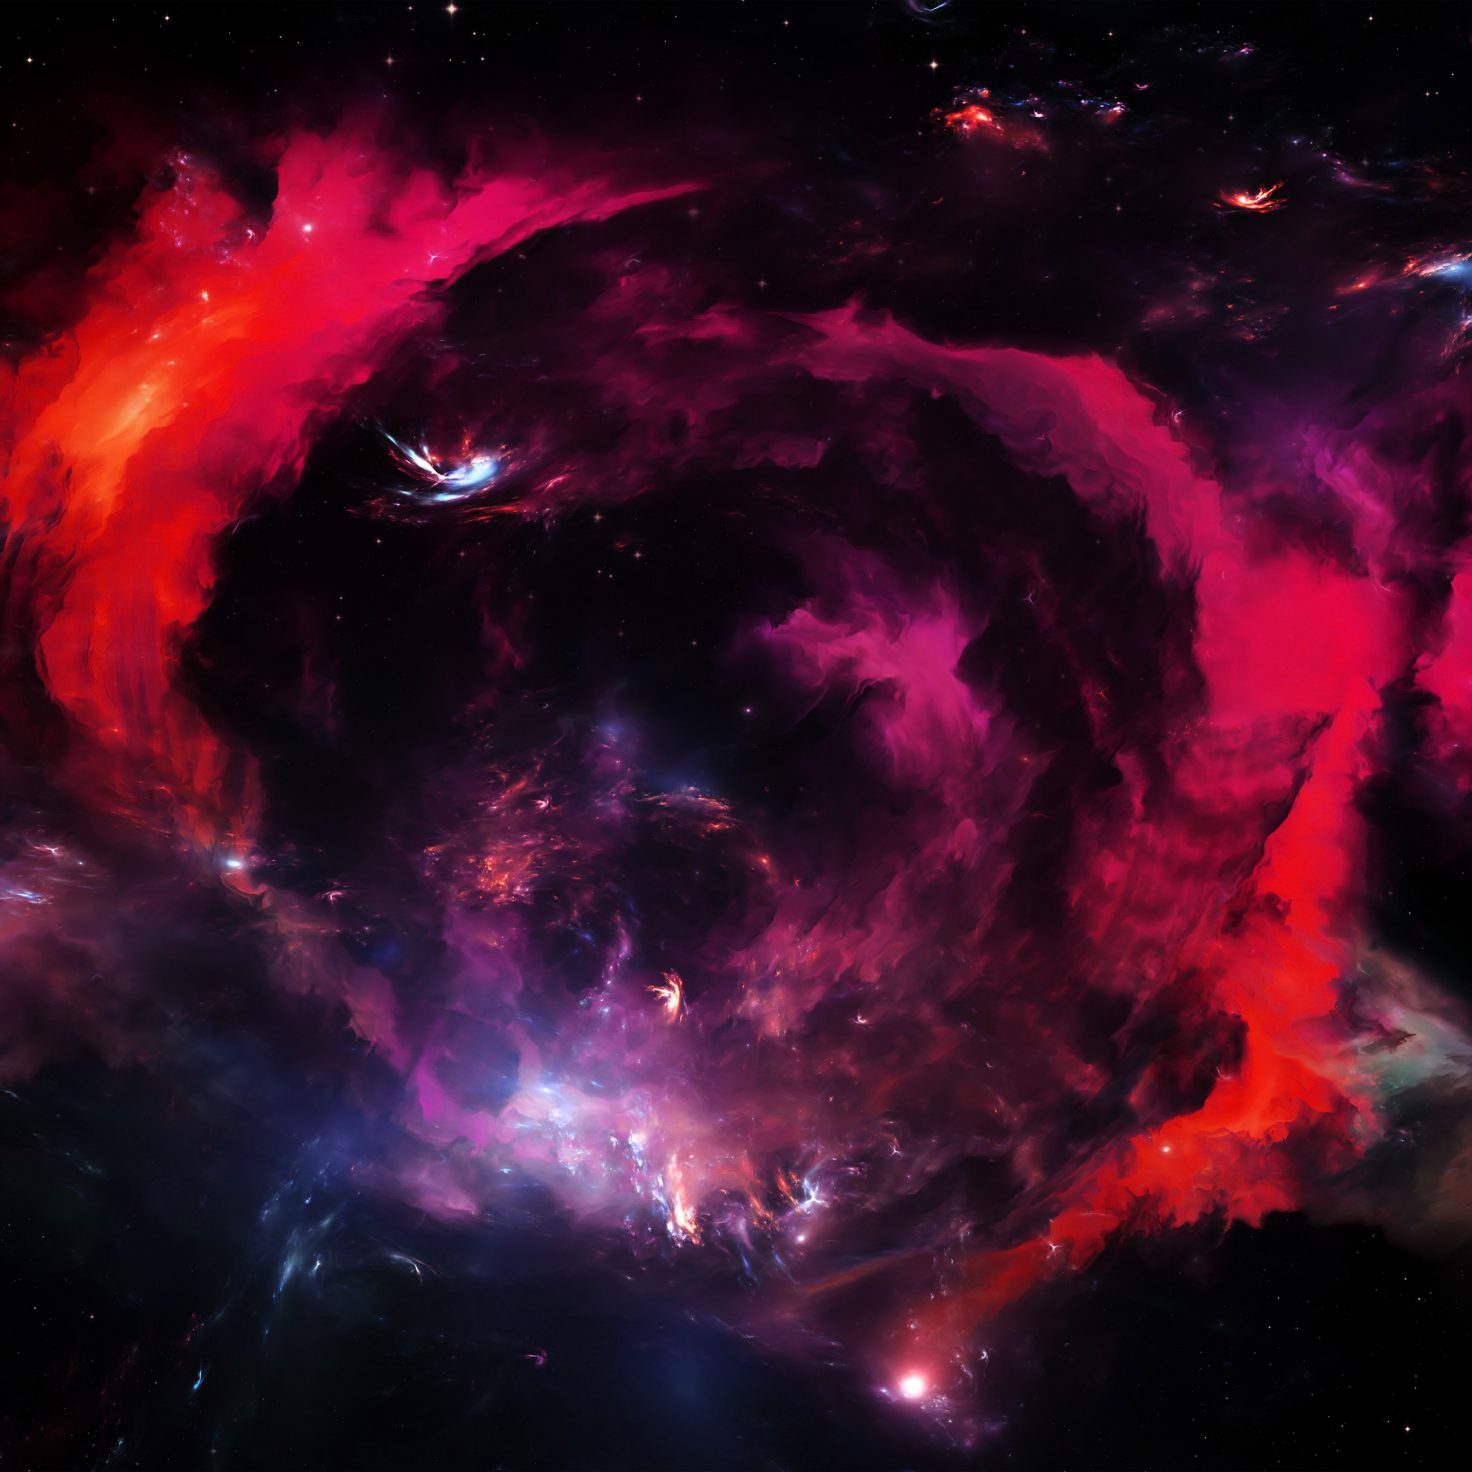 space-art-star-galaxy-red-pattern-dark-ipad-pro-1472×1472